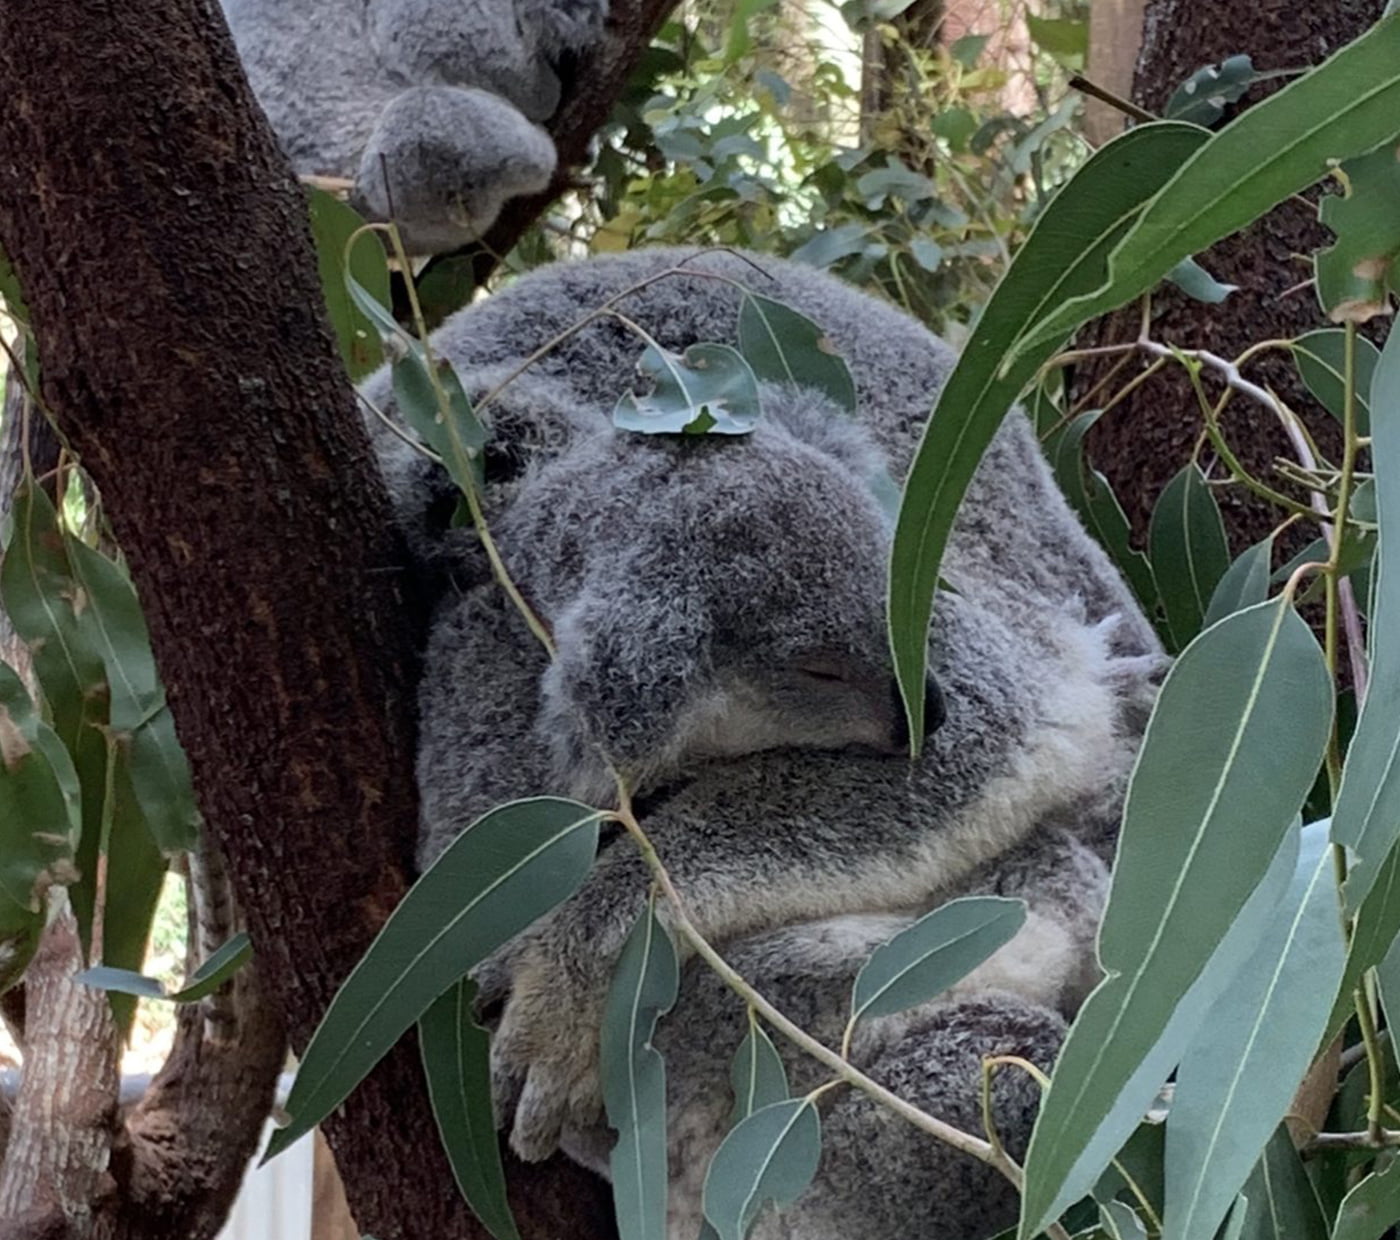 saving koalas